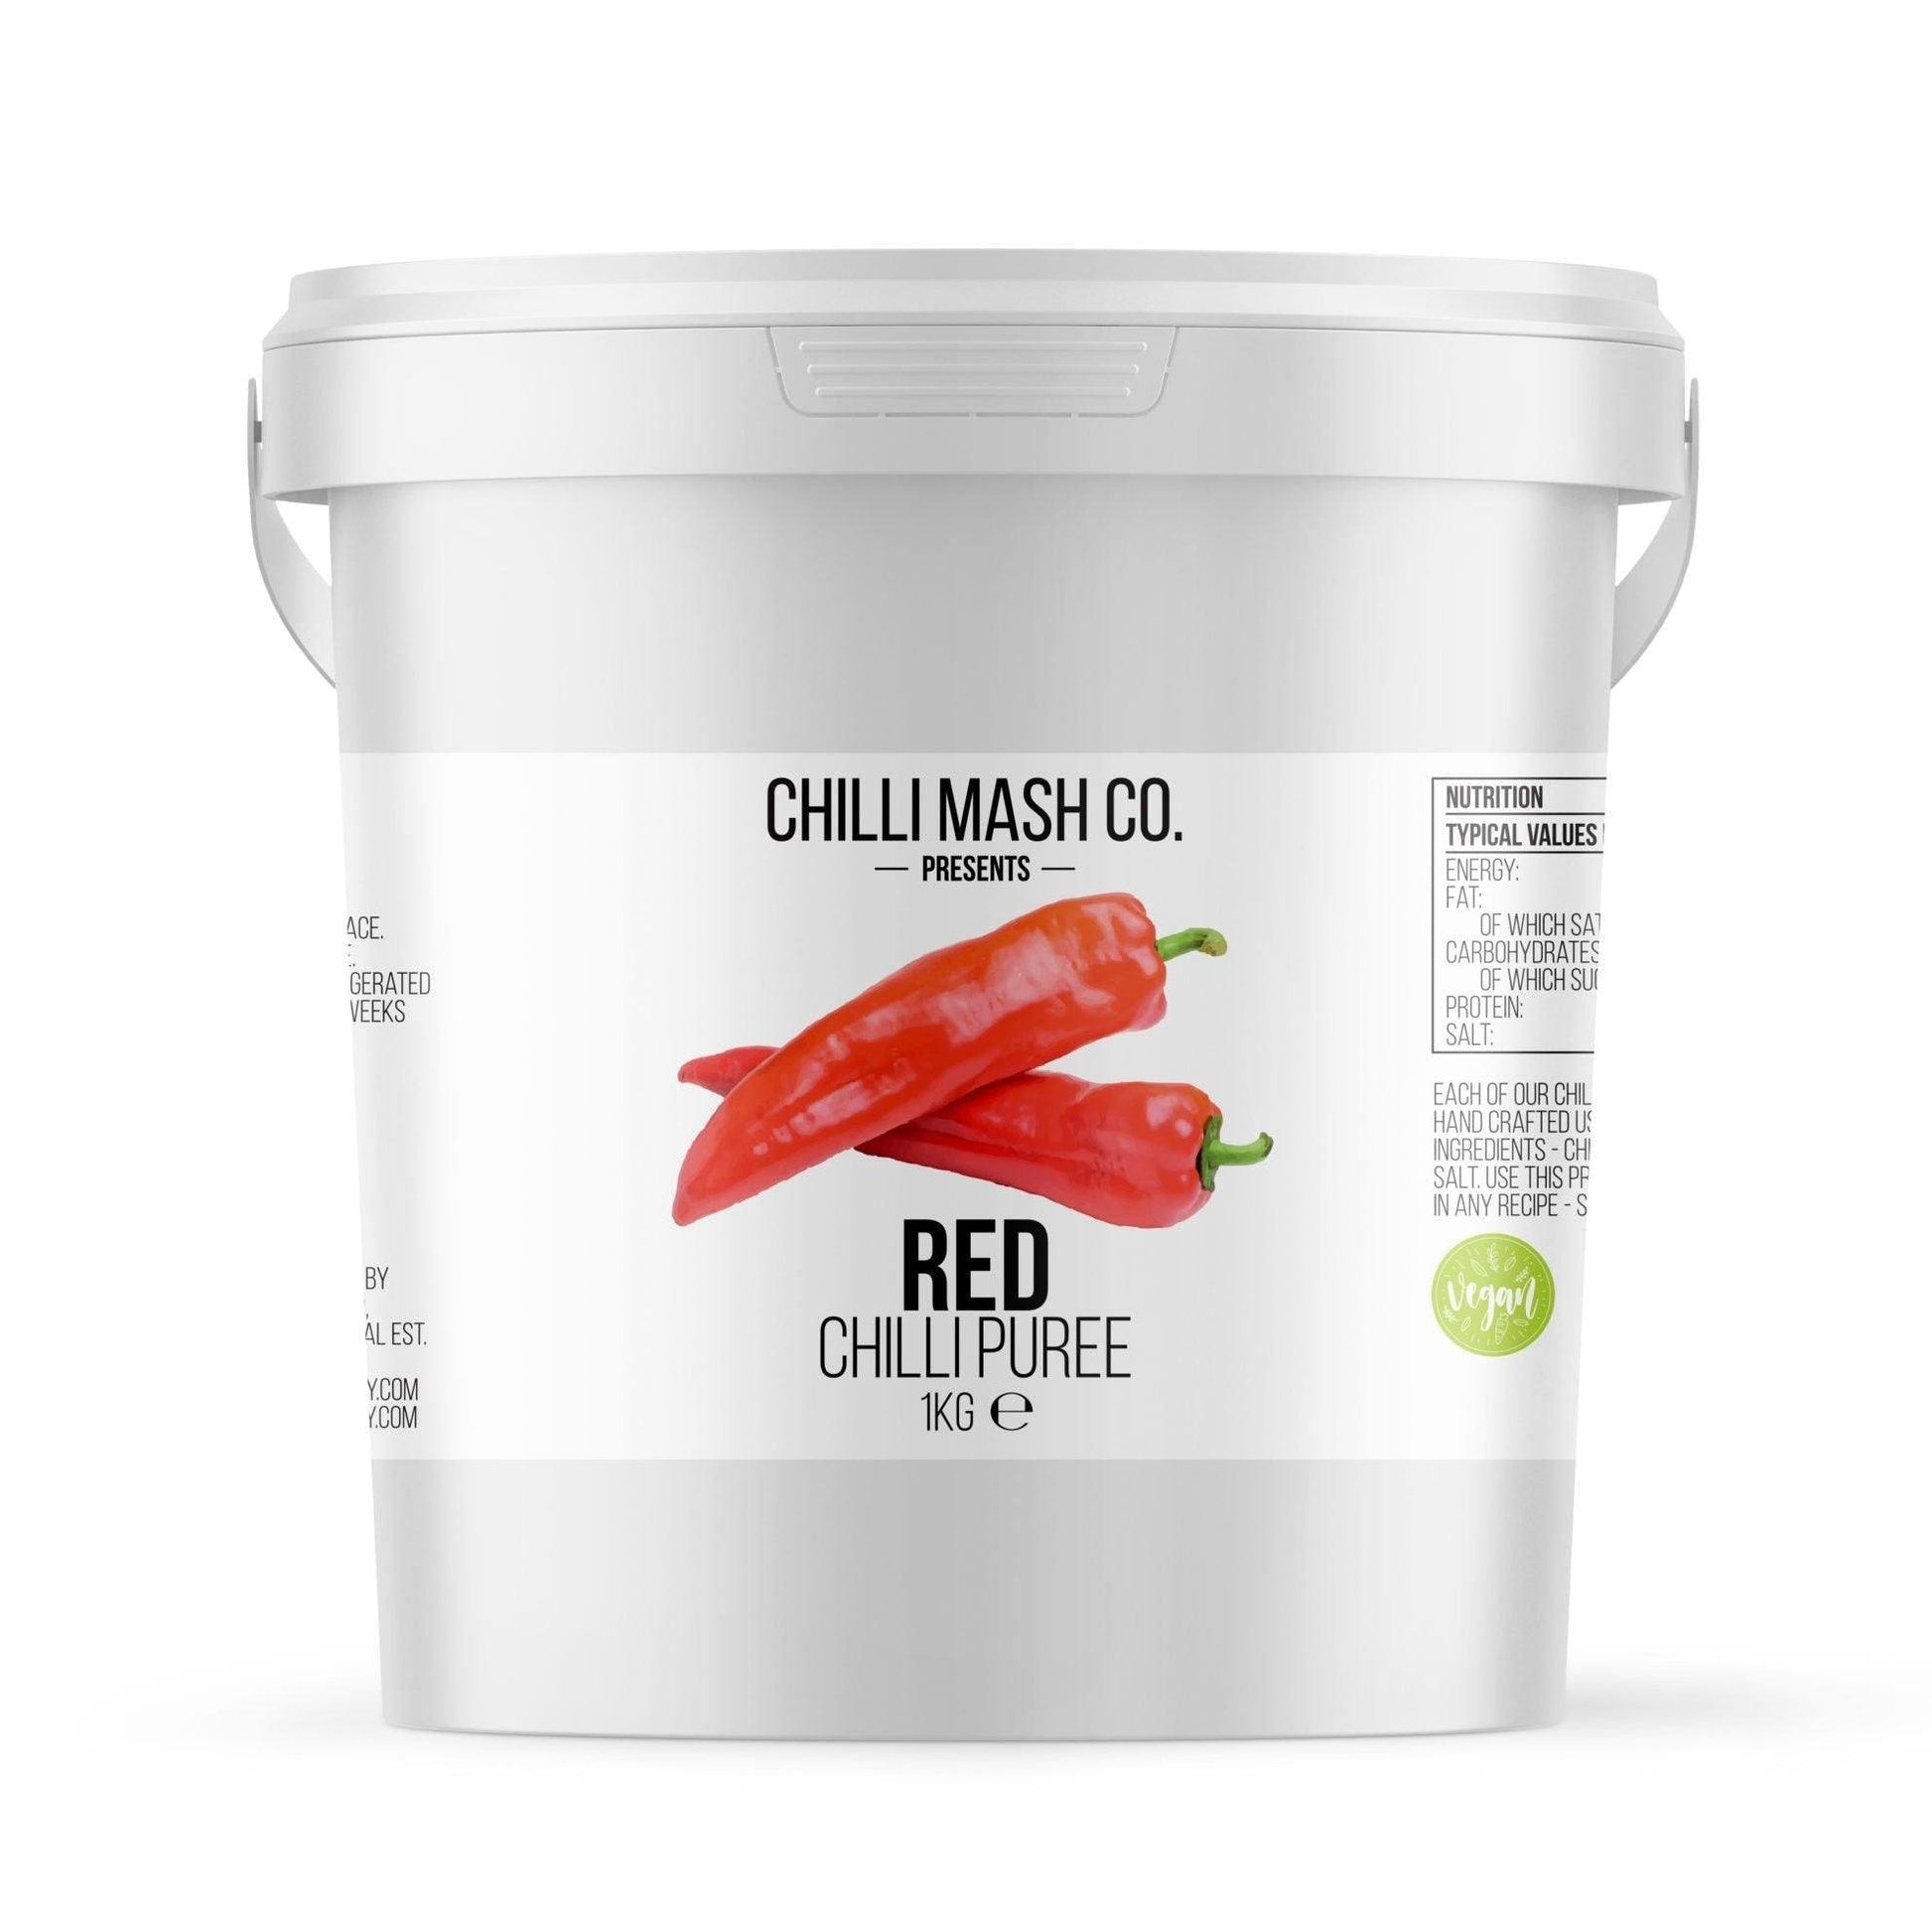 Red Chilli Puree | Chilli Mash Company | 1kg | Mild to Medium Chilli Paste - One Stop Chilli Shop